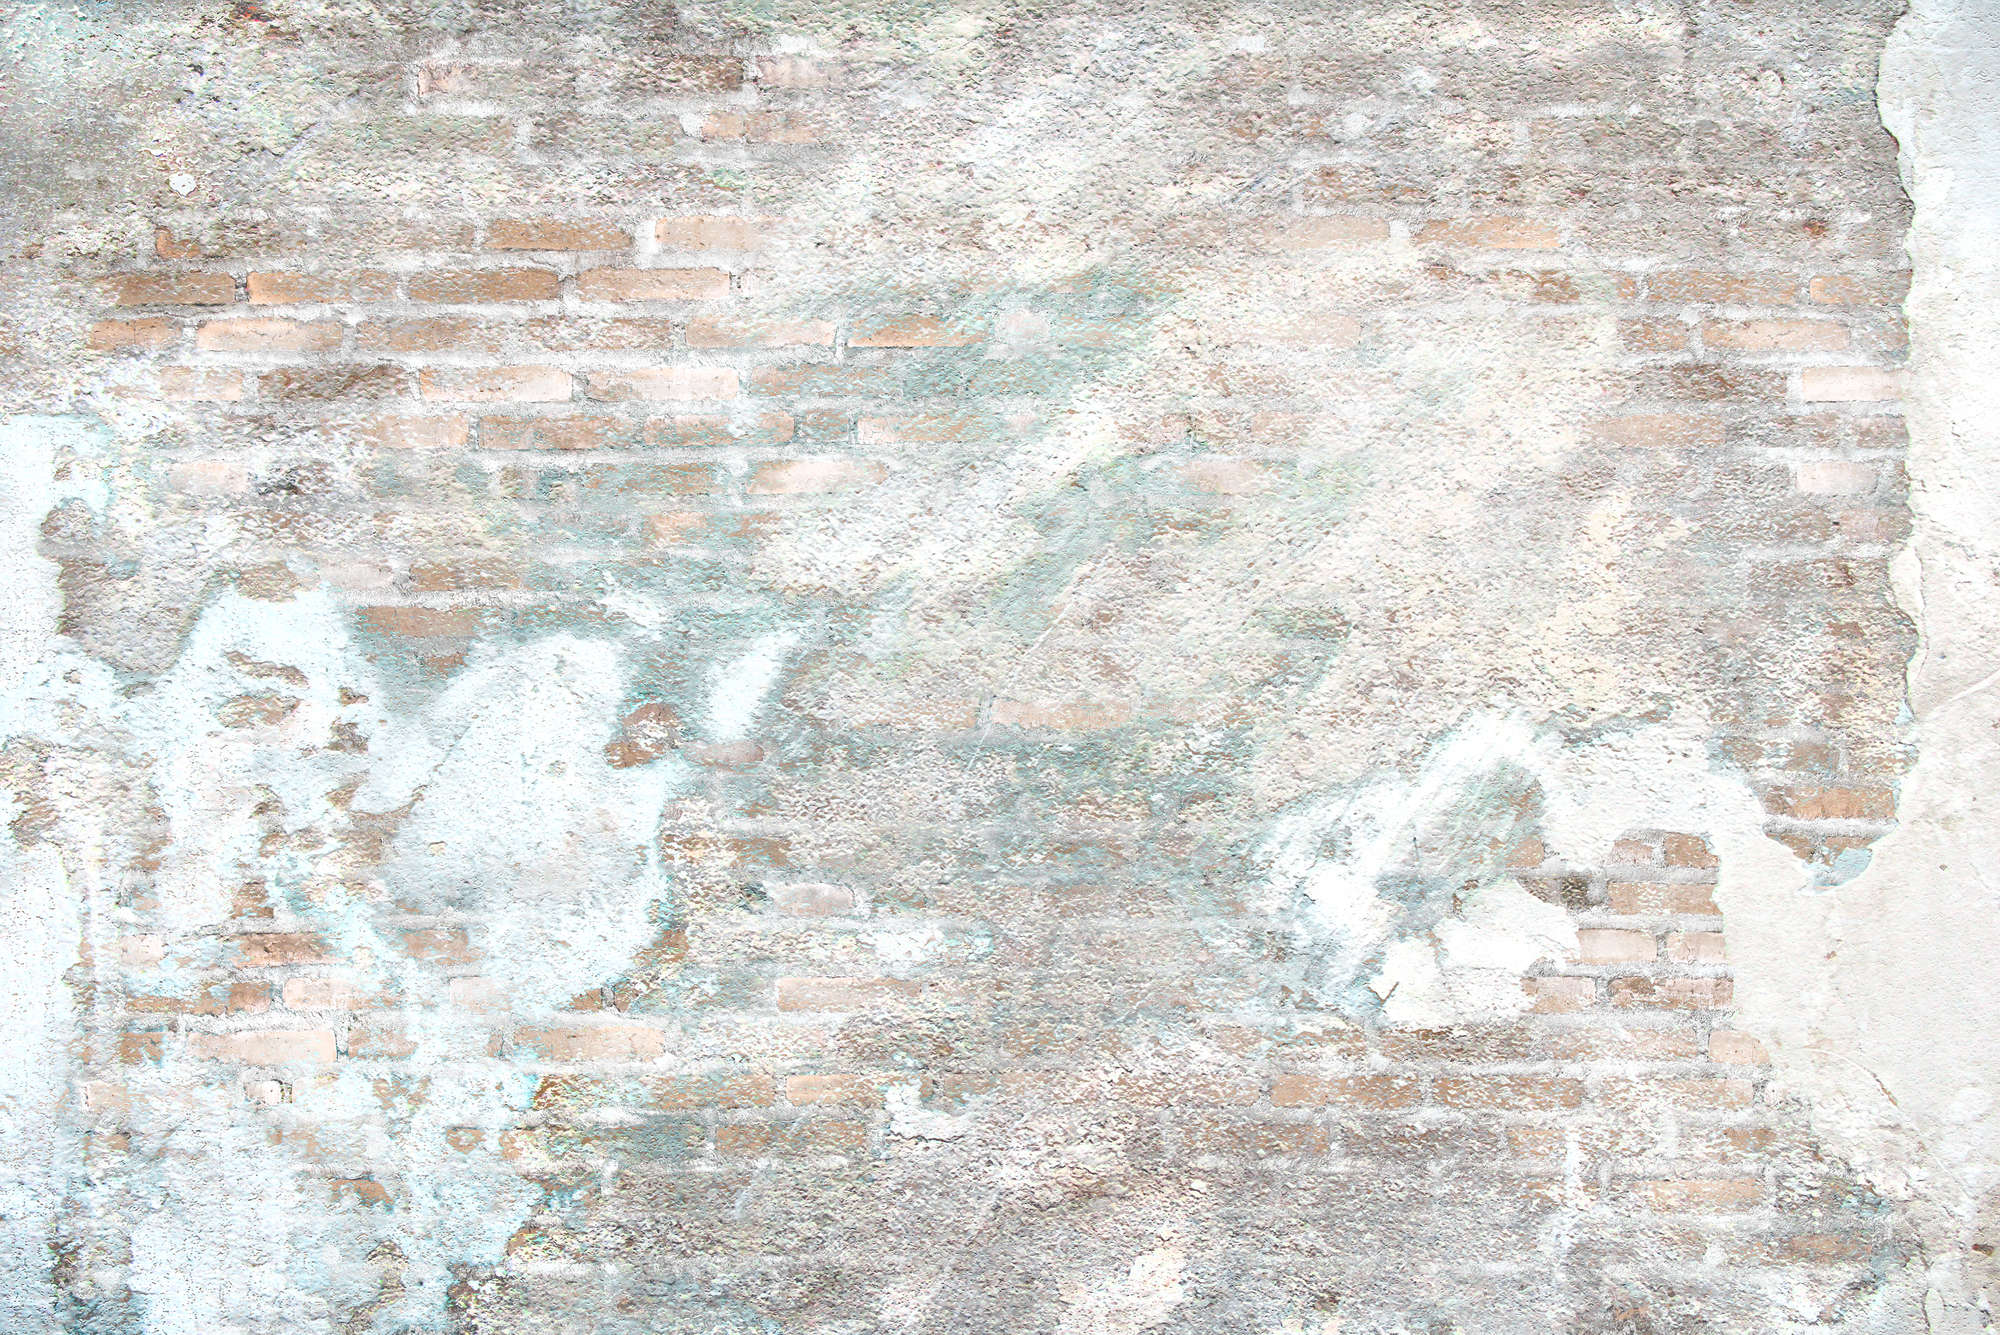             Fototapete Steinwand mit Putzresten – Perlmutt Glattvlies
        